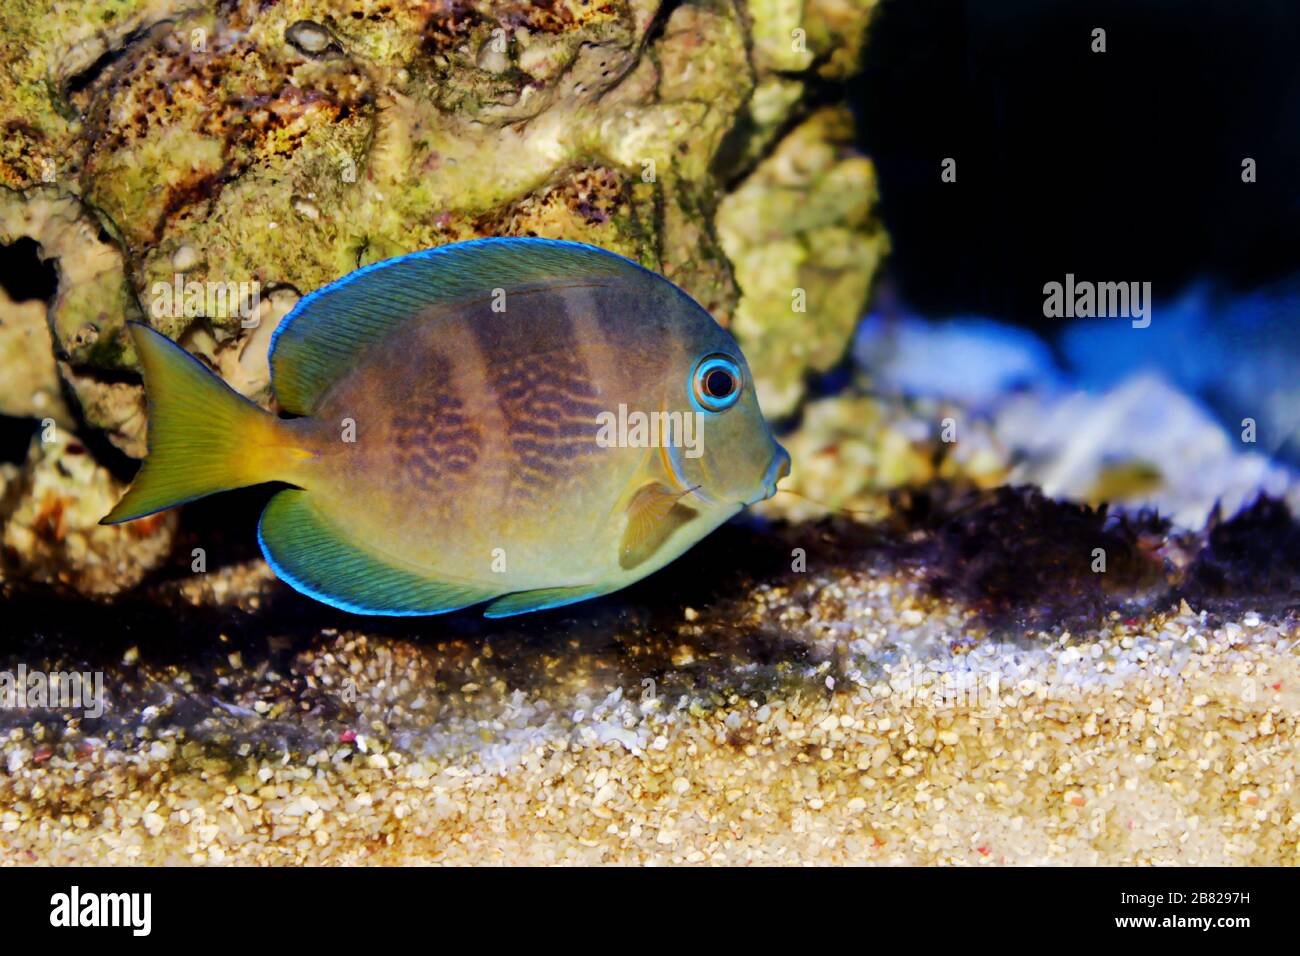 Blu (giallo giovanile) Tang di pesce di mare Atlantico - Acanthurus coeruleus Foto Stock